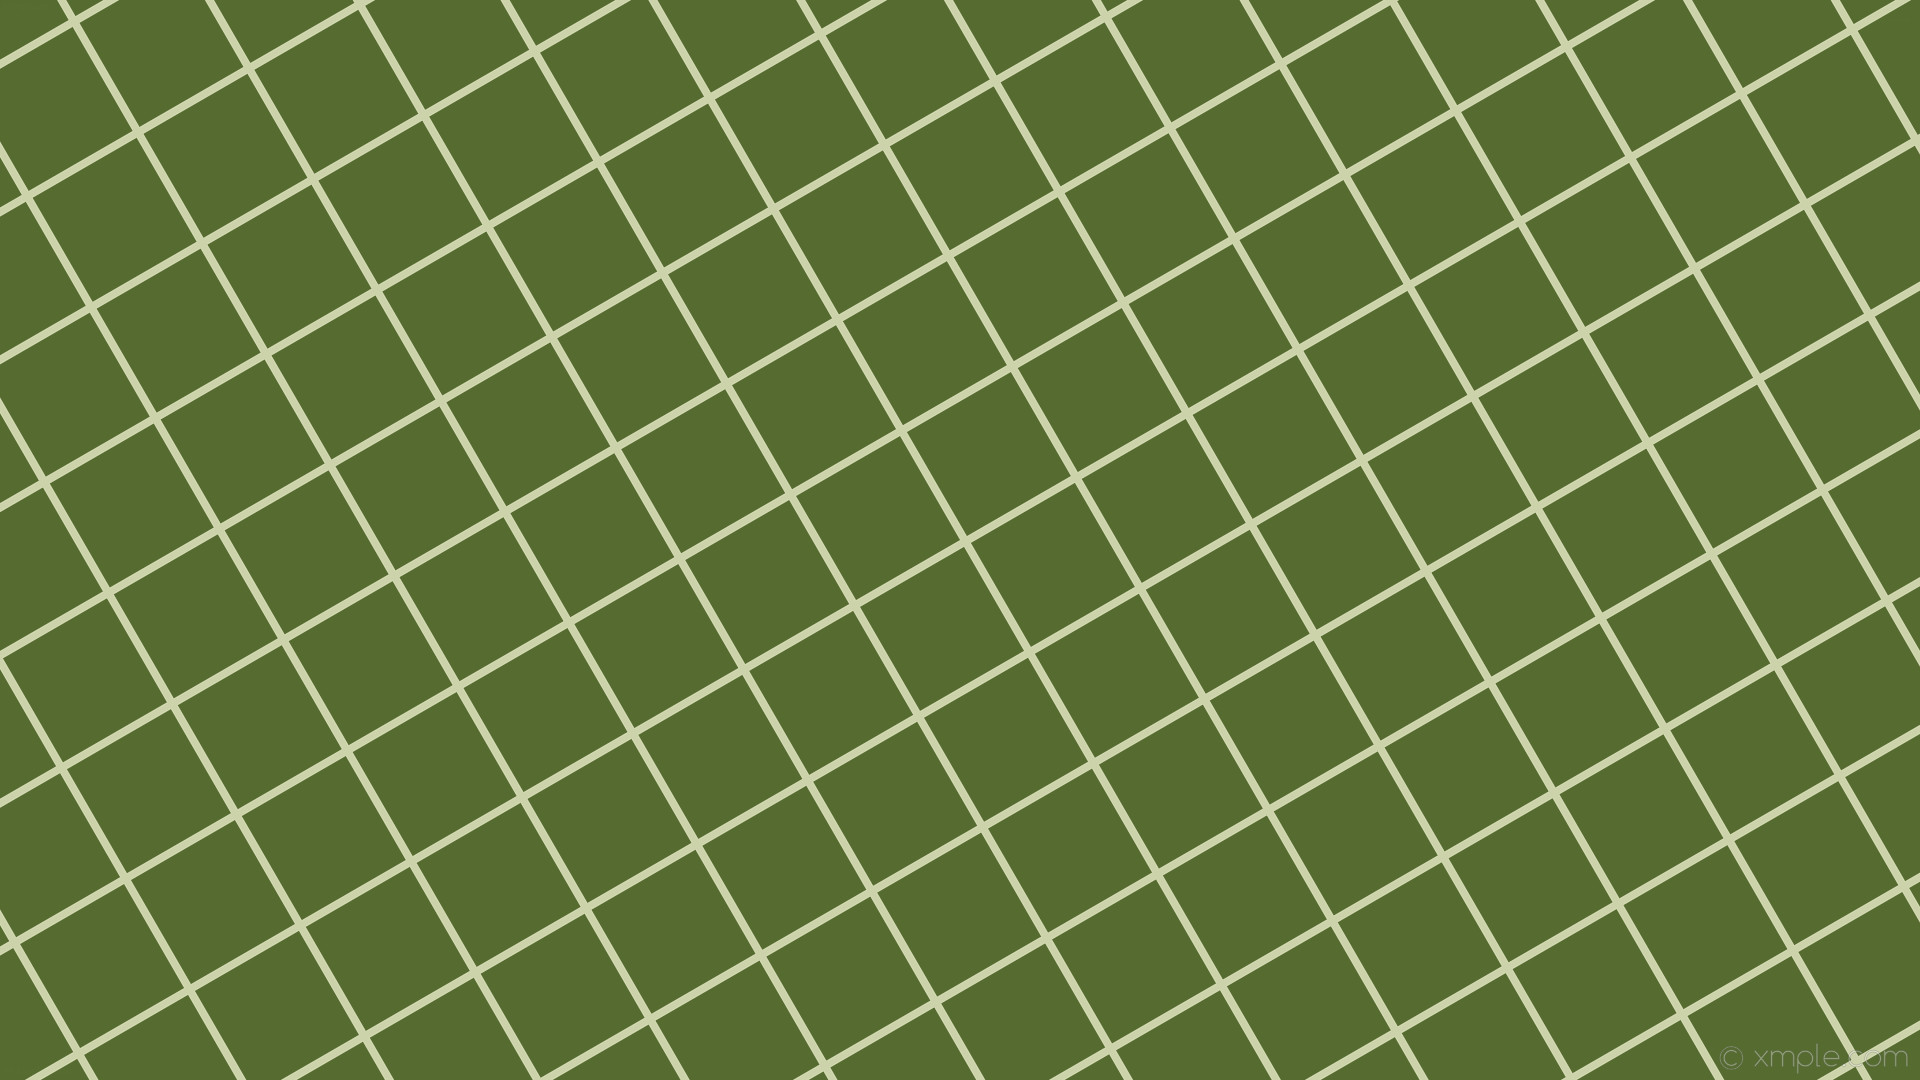 ᴸⁱᵍʰᵗ ᵍʳᵉᵉⁿ  matcha colour  ʷᵃˡˡᵖᵃᵖᵉʳ  Mint green wallpaper iphone  Iphone wallpaper green Aesthetic iphone wallpaper